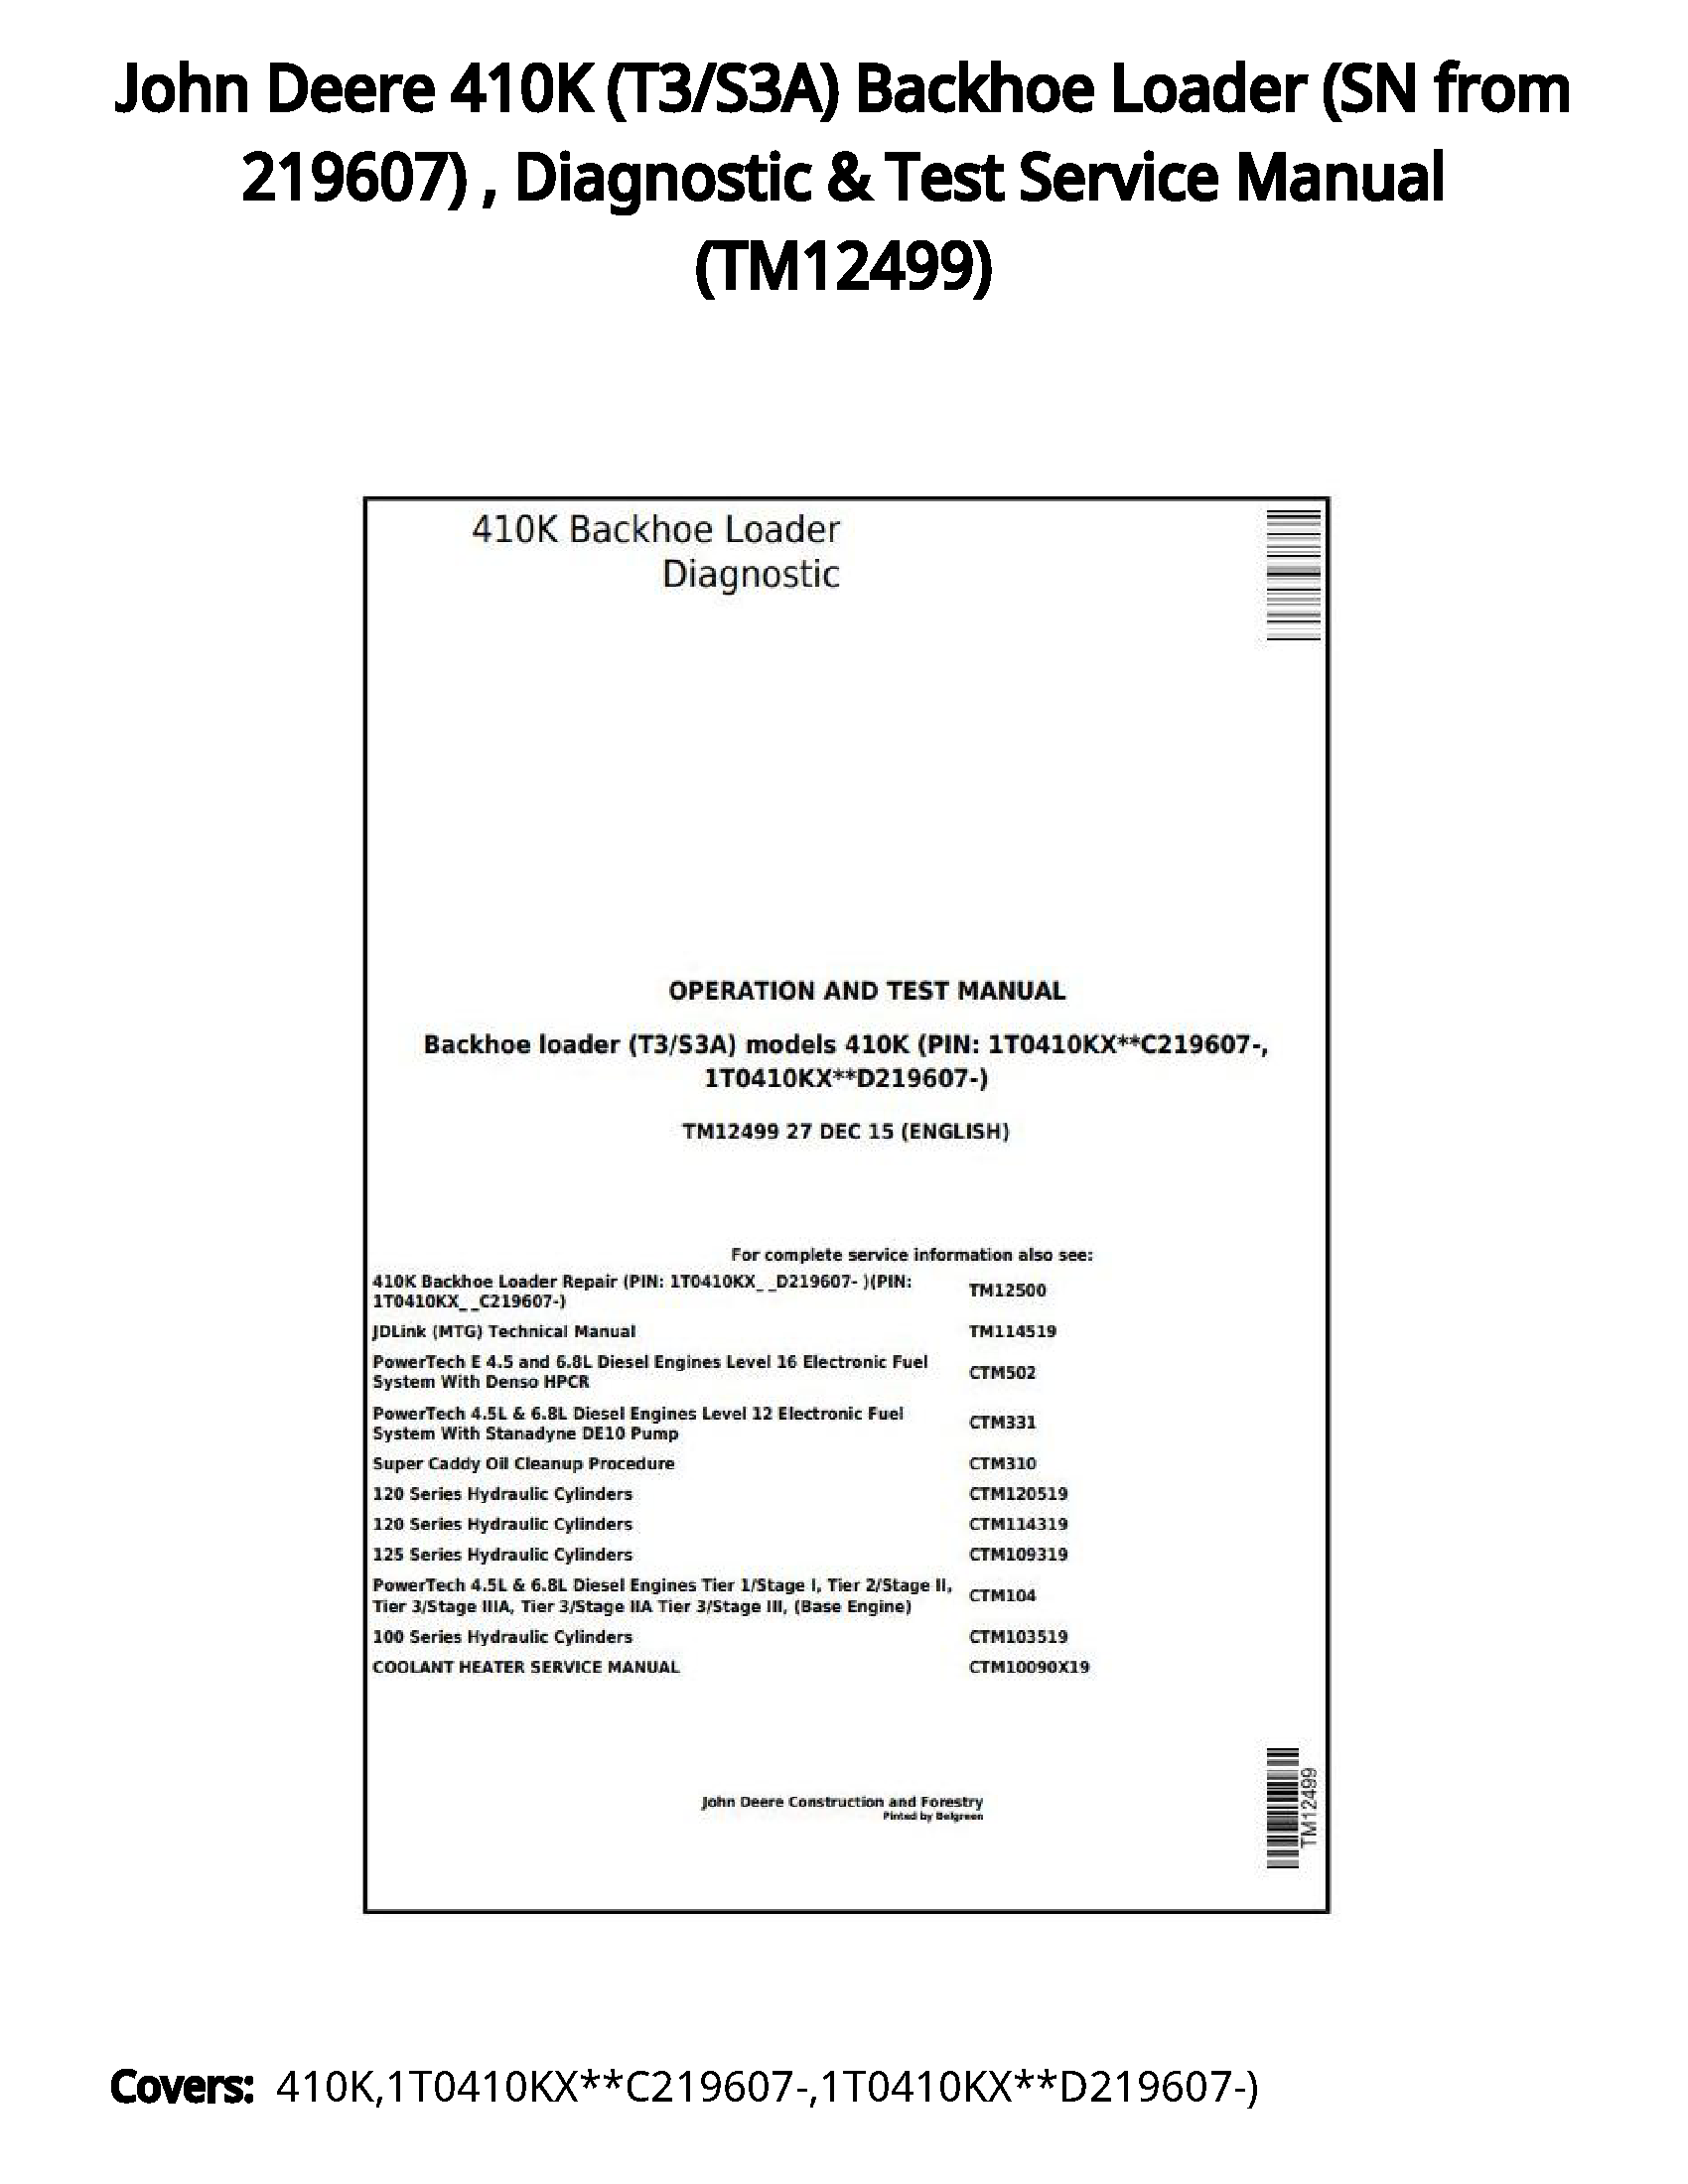 John Deere 410K (T3/S3A) Backhoe Loader (SN from 219607)   Diagnostic & Test Service Manual - TM12499